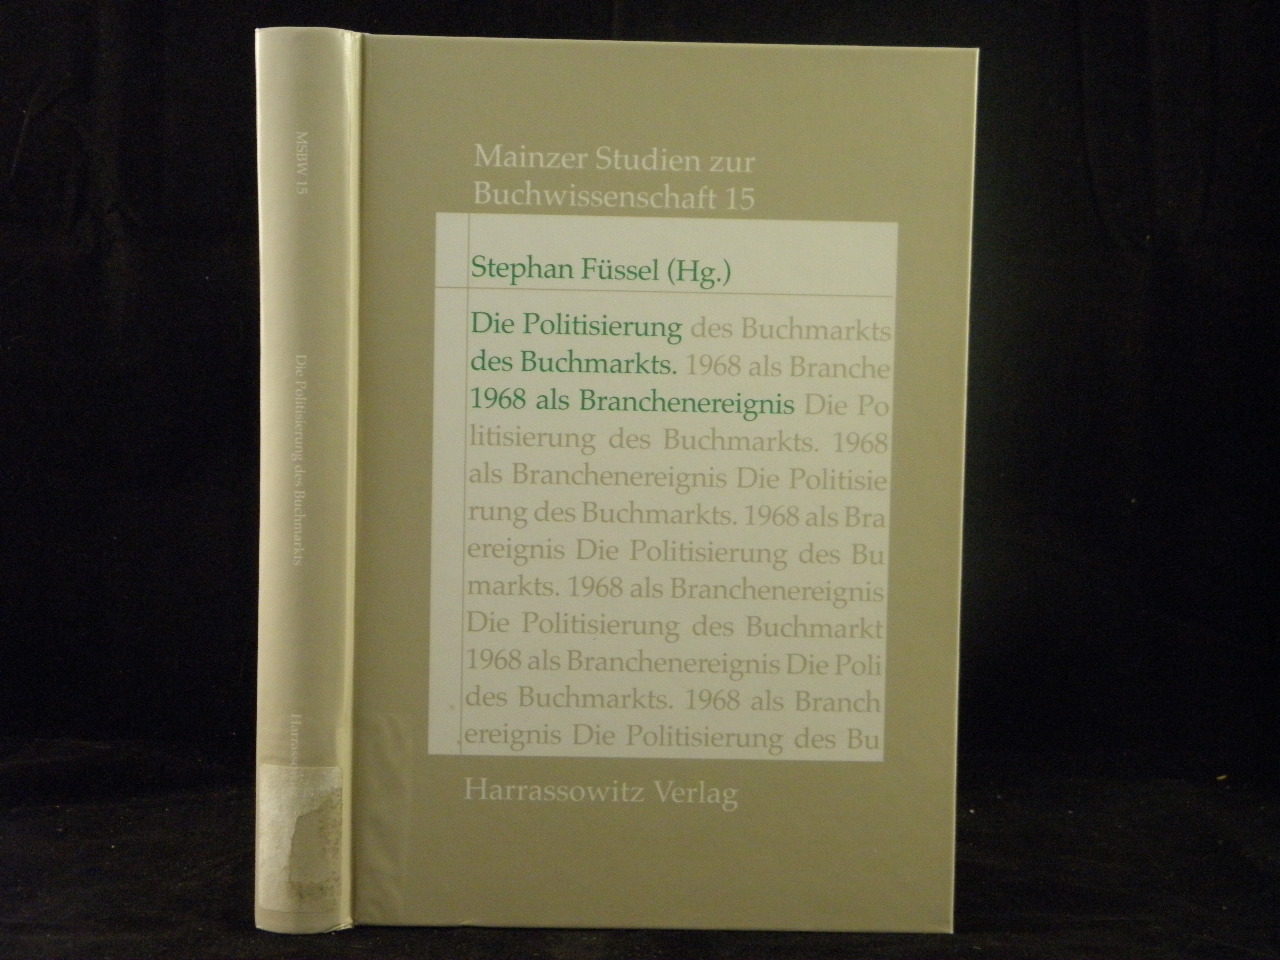 (Hrsg.) Die Politisierung des Buchmarkts. 1968 als Branchenereignis. Hans Altenhein zum 80. Geburtstag gewidmet. - FÜSSEL, Stephan